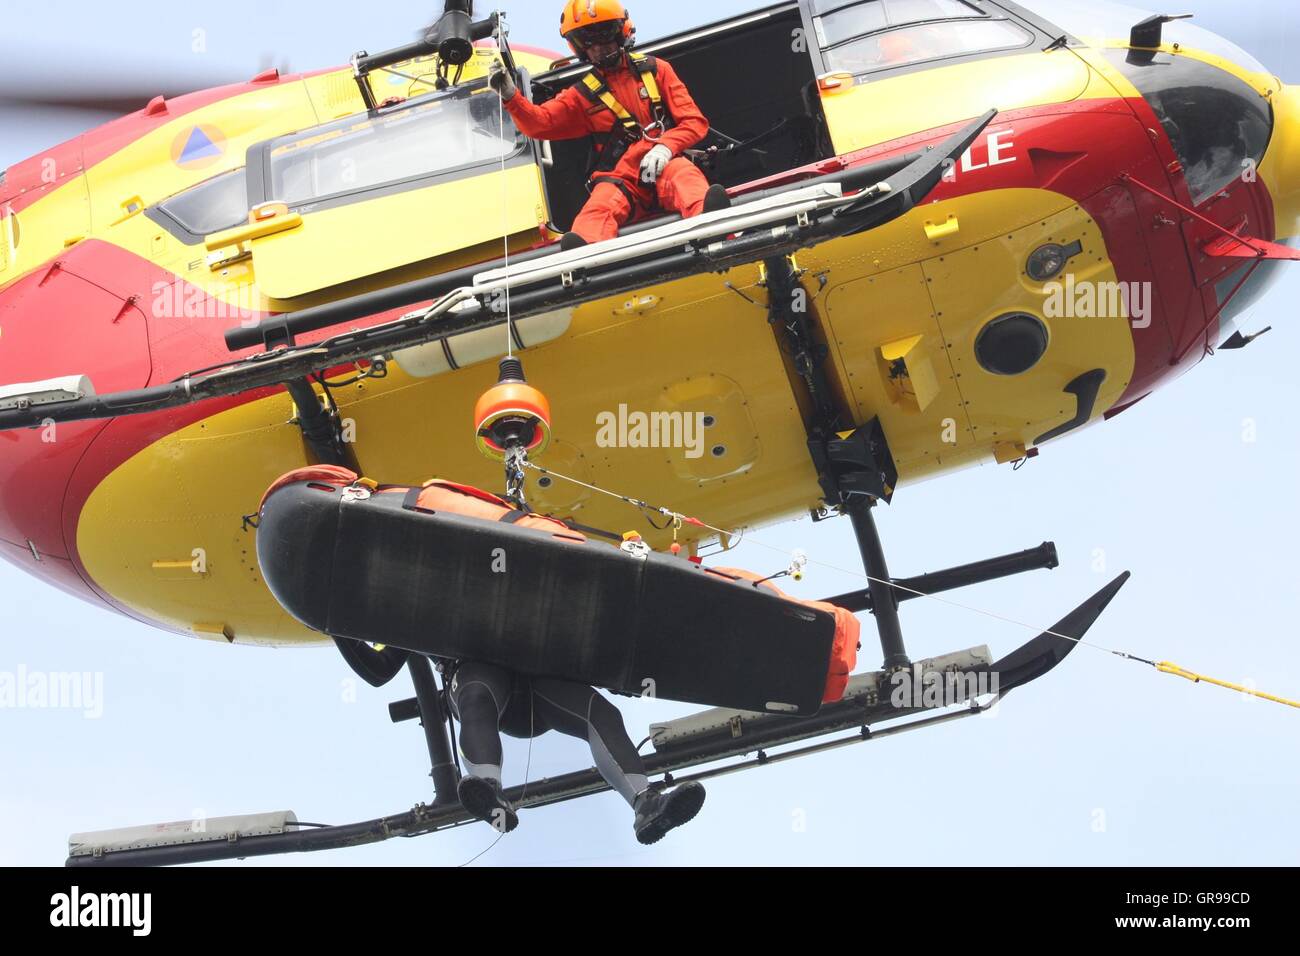 Basso Angolo di visione dell'uomo sul Salvataggio in elicottero contro Sky Foto Stock